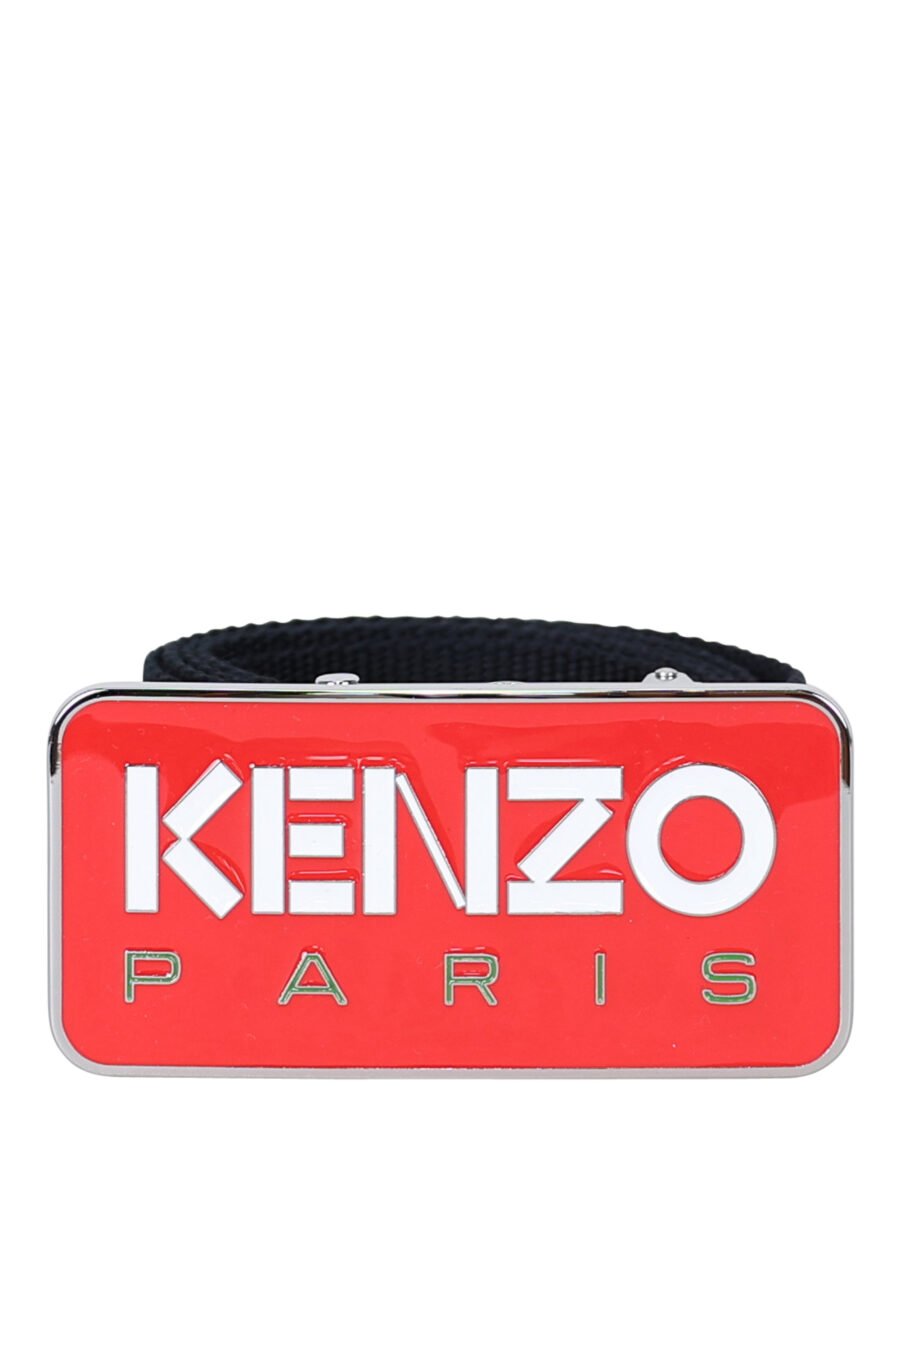 Cinturón negro con hebilla roja logo "kenzo paris" - 3612230547339